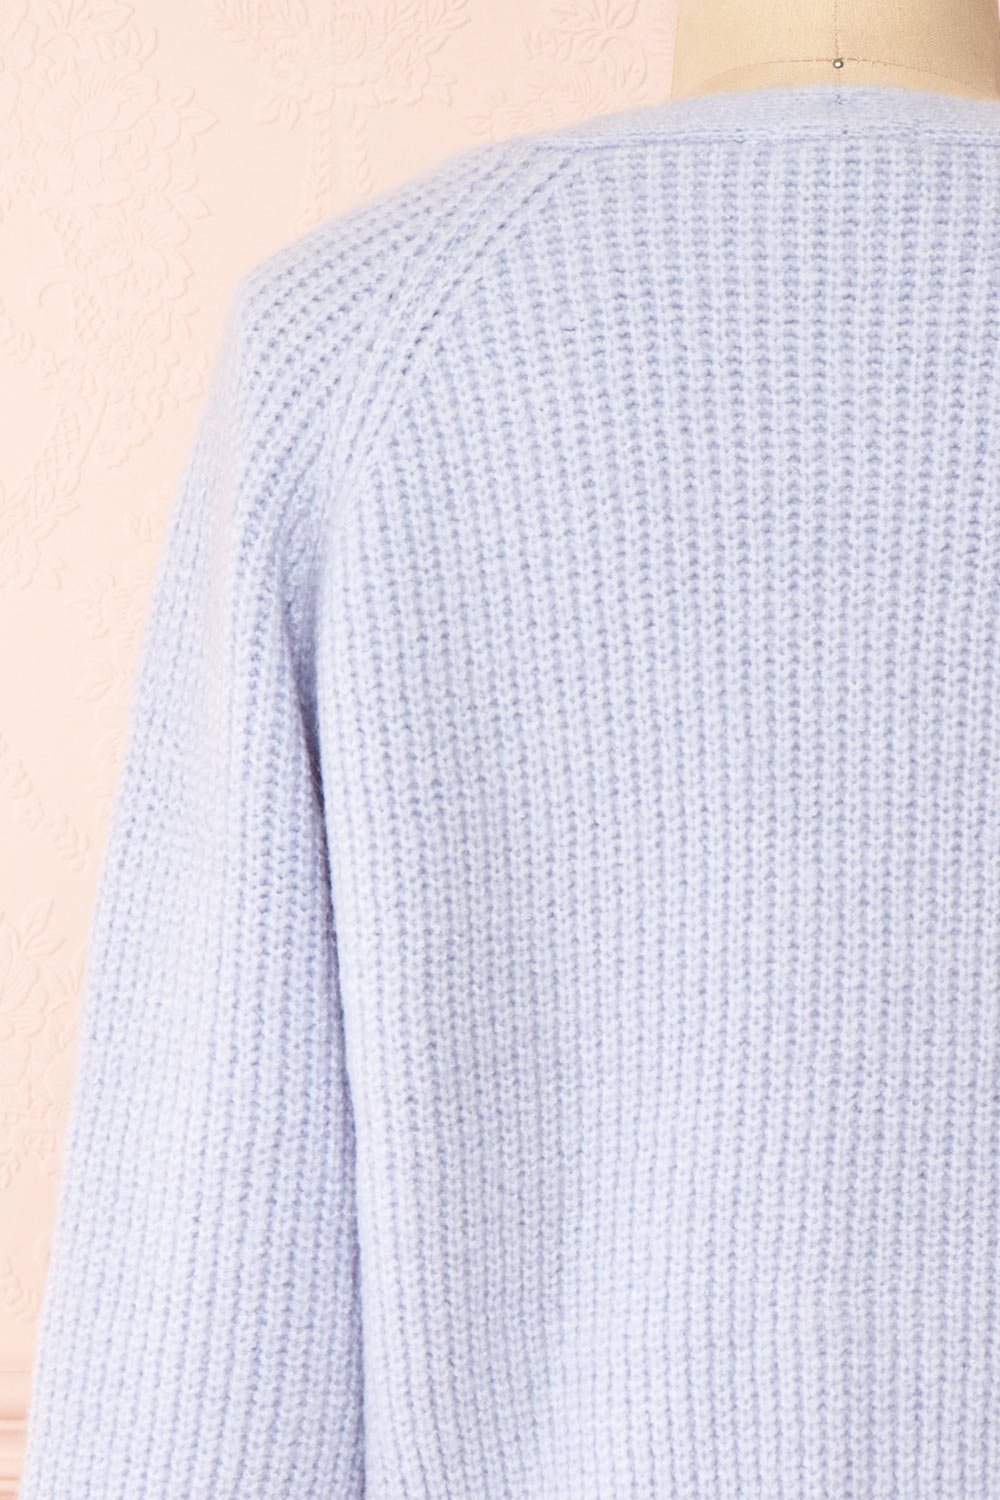 Benita Blue V-Neck Cropped Knit Cardigan | Boutique 1861 back close-up